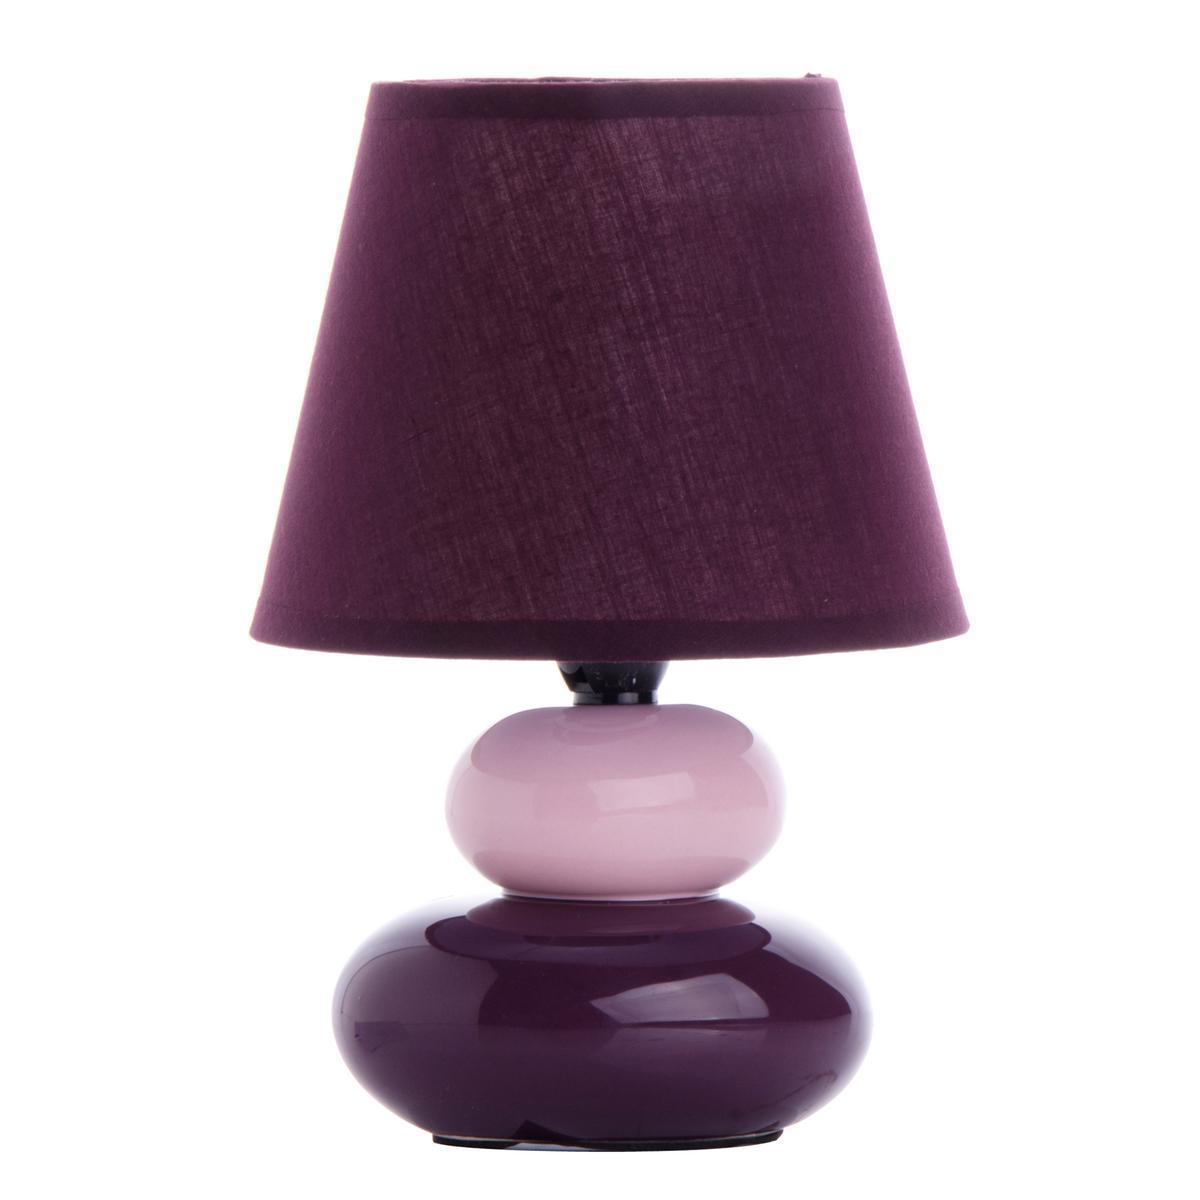 Lampe à poser stones charme - Céramique - Hauteur 22 cm - Violet prune